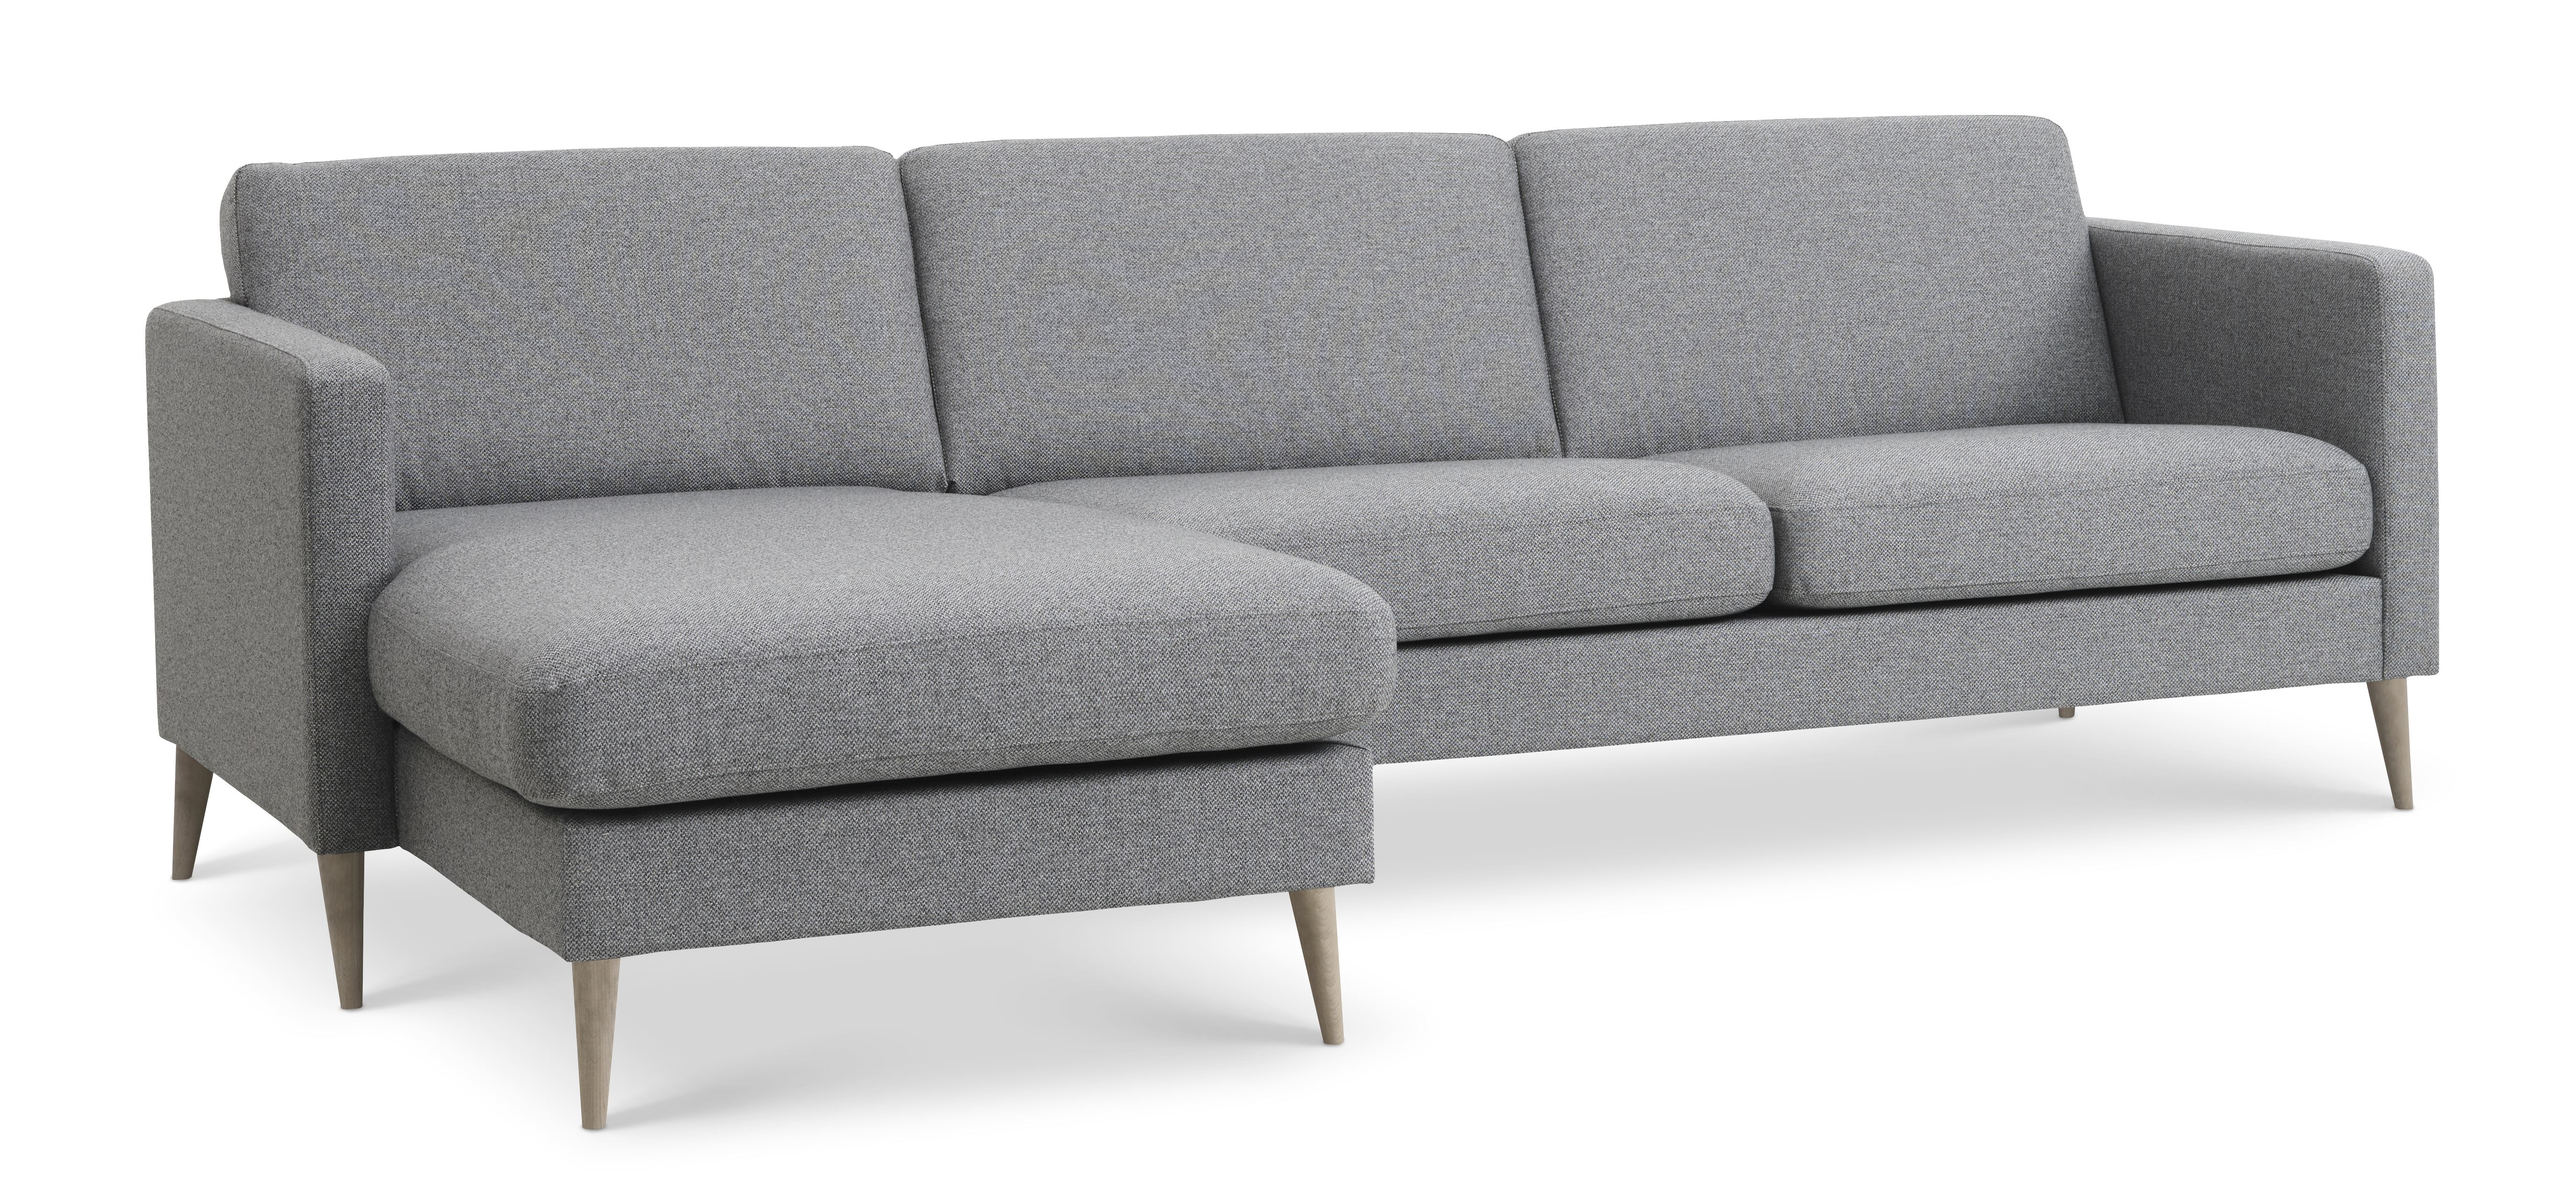 Billede af Ask sæt 51 3D sofa, m. chaiselong - lys granitgrå polyester stof og natur træ